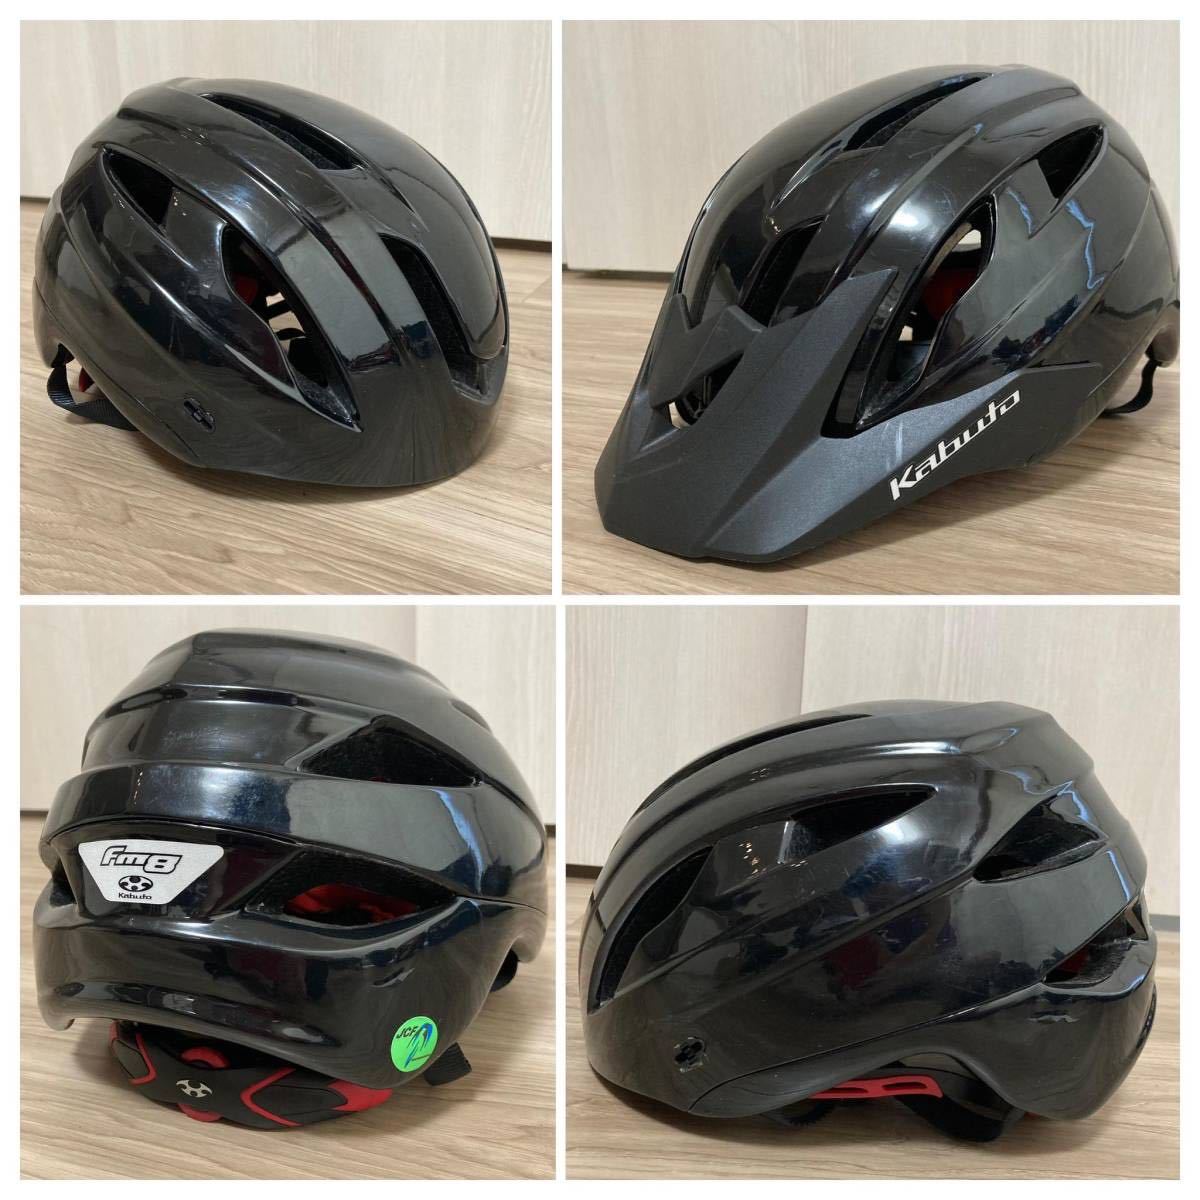 OGKカブト M/L 調整付き アジア人向け 軽量 ヘルメット JCF(日本自転車競技連盟)公認 OGK KABUTO 定番 FM8 私服にも合う 通気性 良質 49 黒の画像2